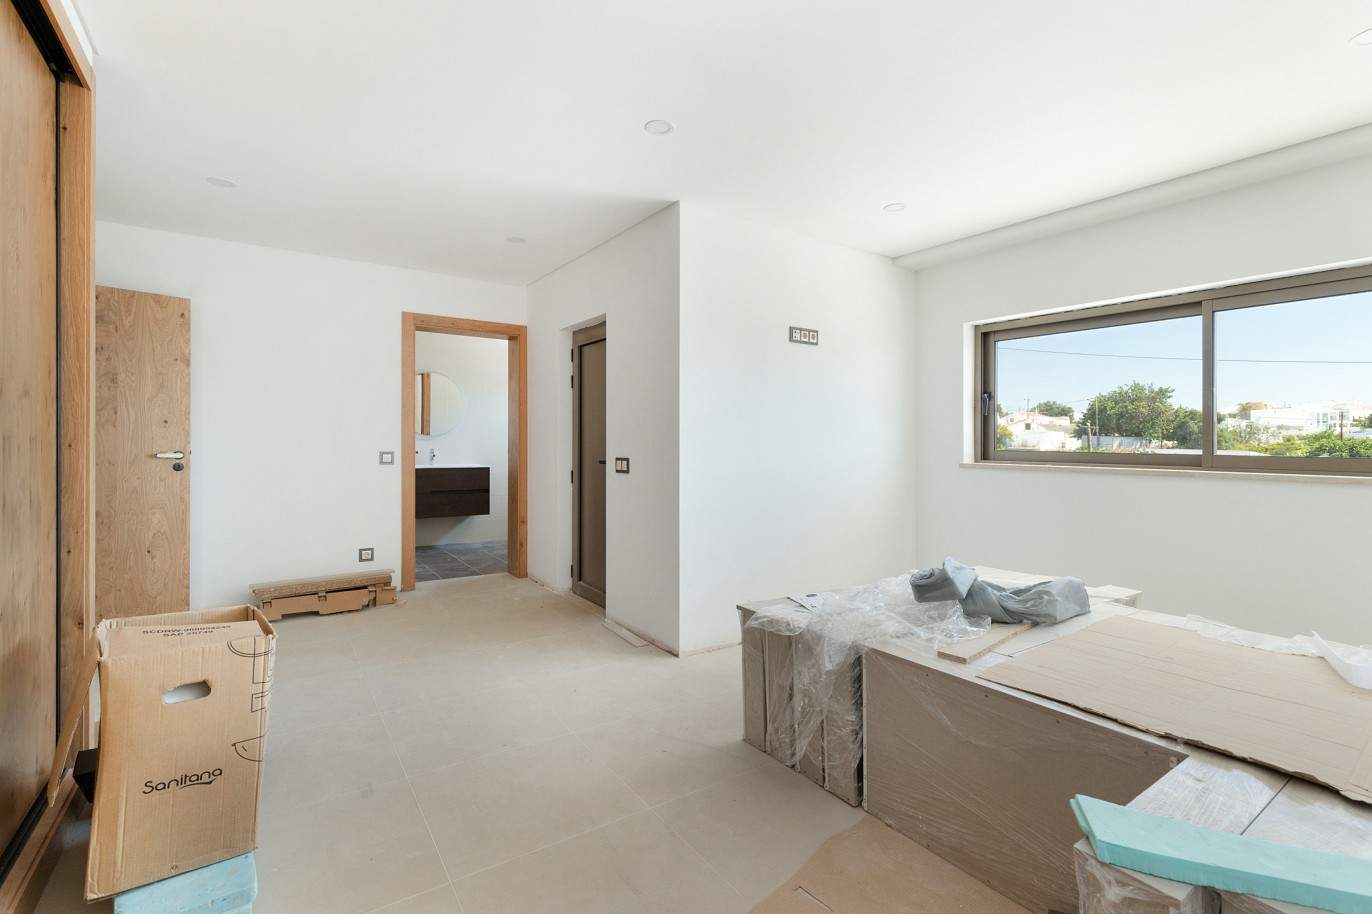 Villa de 5 dormitorios, de nueva construcción, en venta en Albufeira, Algarve_203234